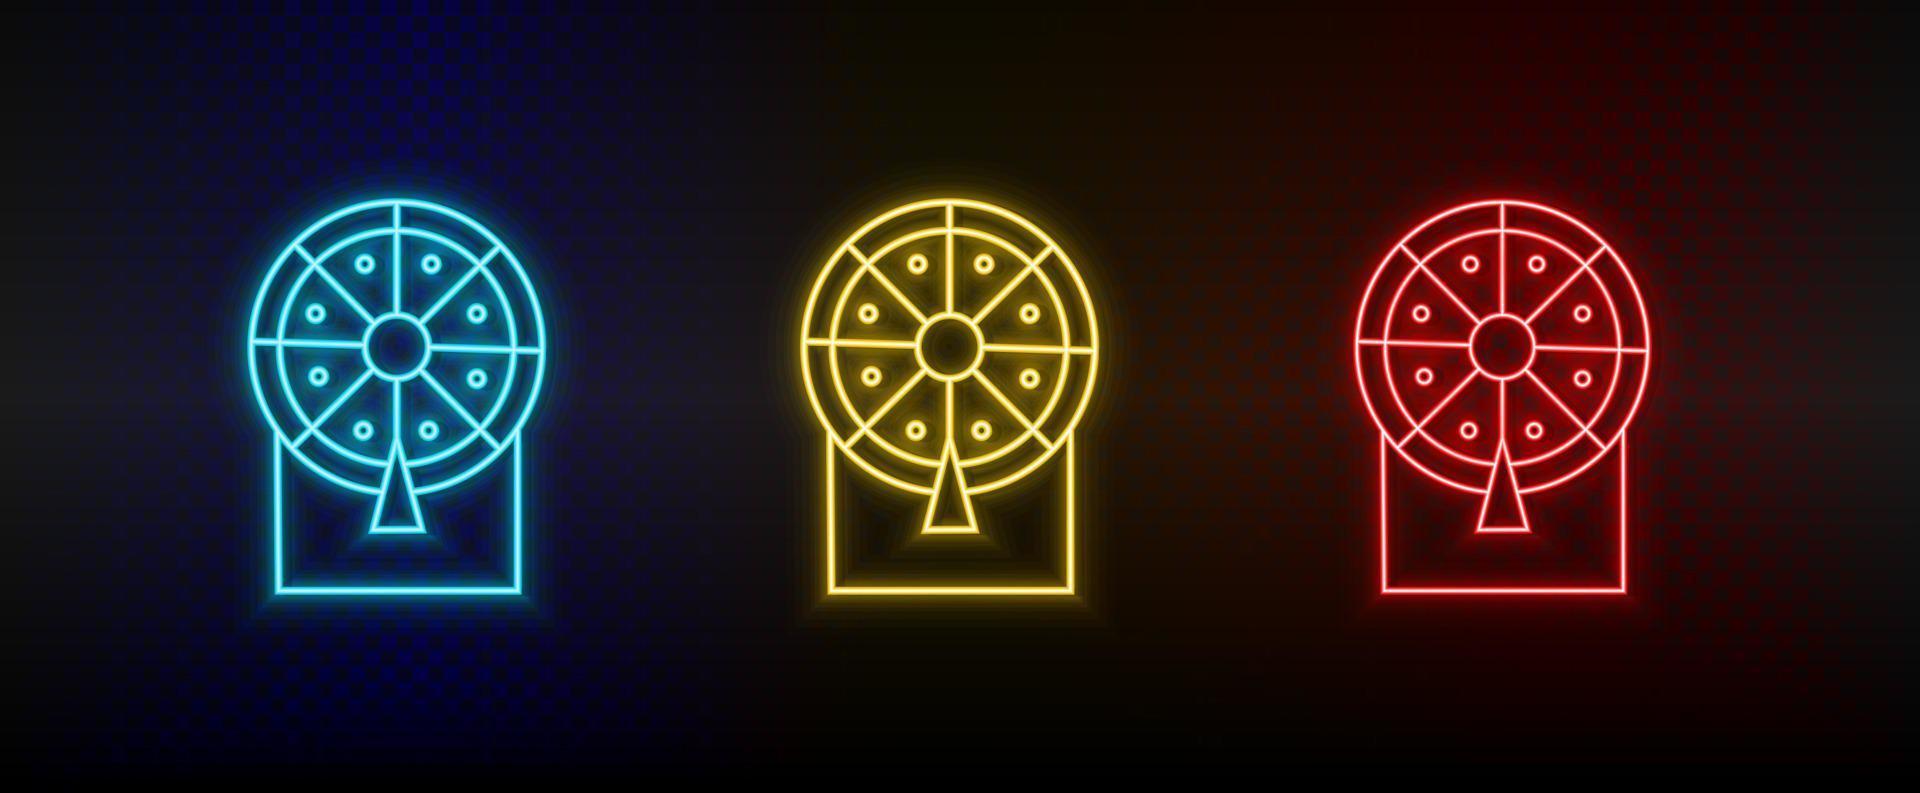 Neon-Symbole. Casino-Glückslotterie Retro. Satz von roten, blauen, gelben Neonvektorsymbolen auf dunklem Hintergrund vektor